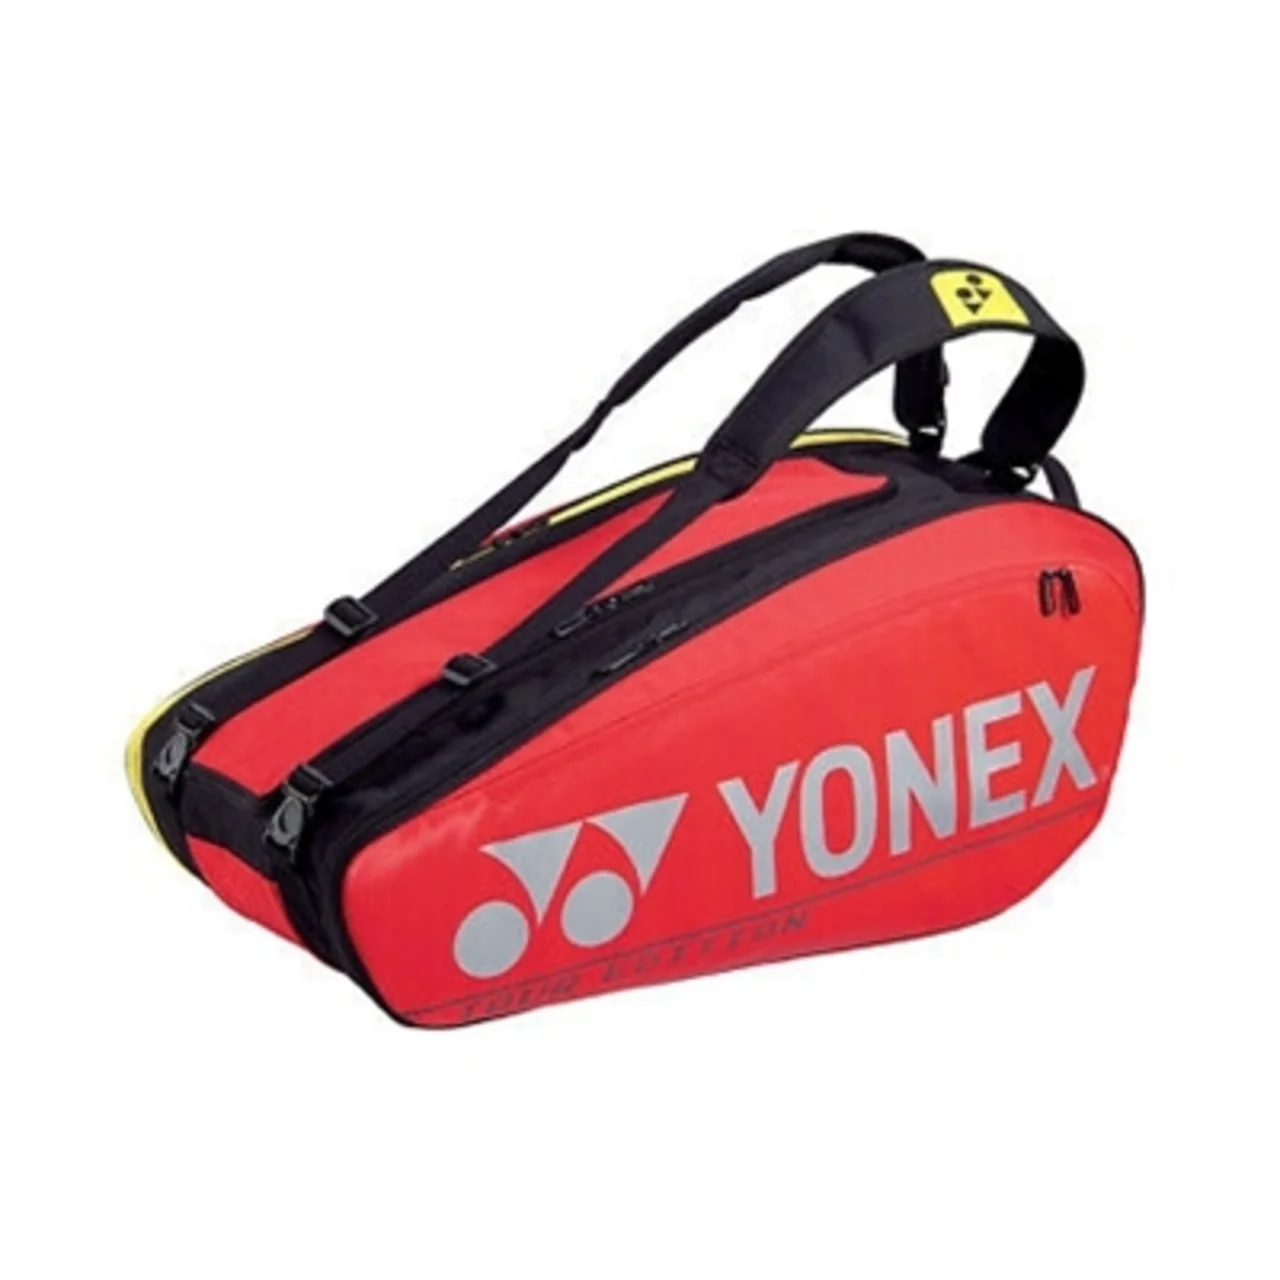 Yonex Pro Bag x9 Red